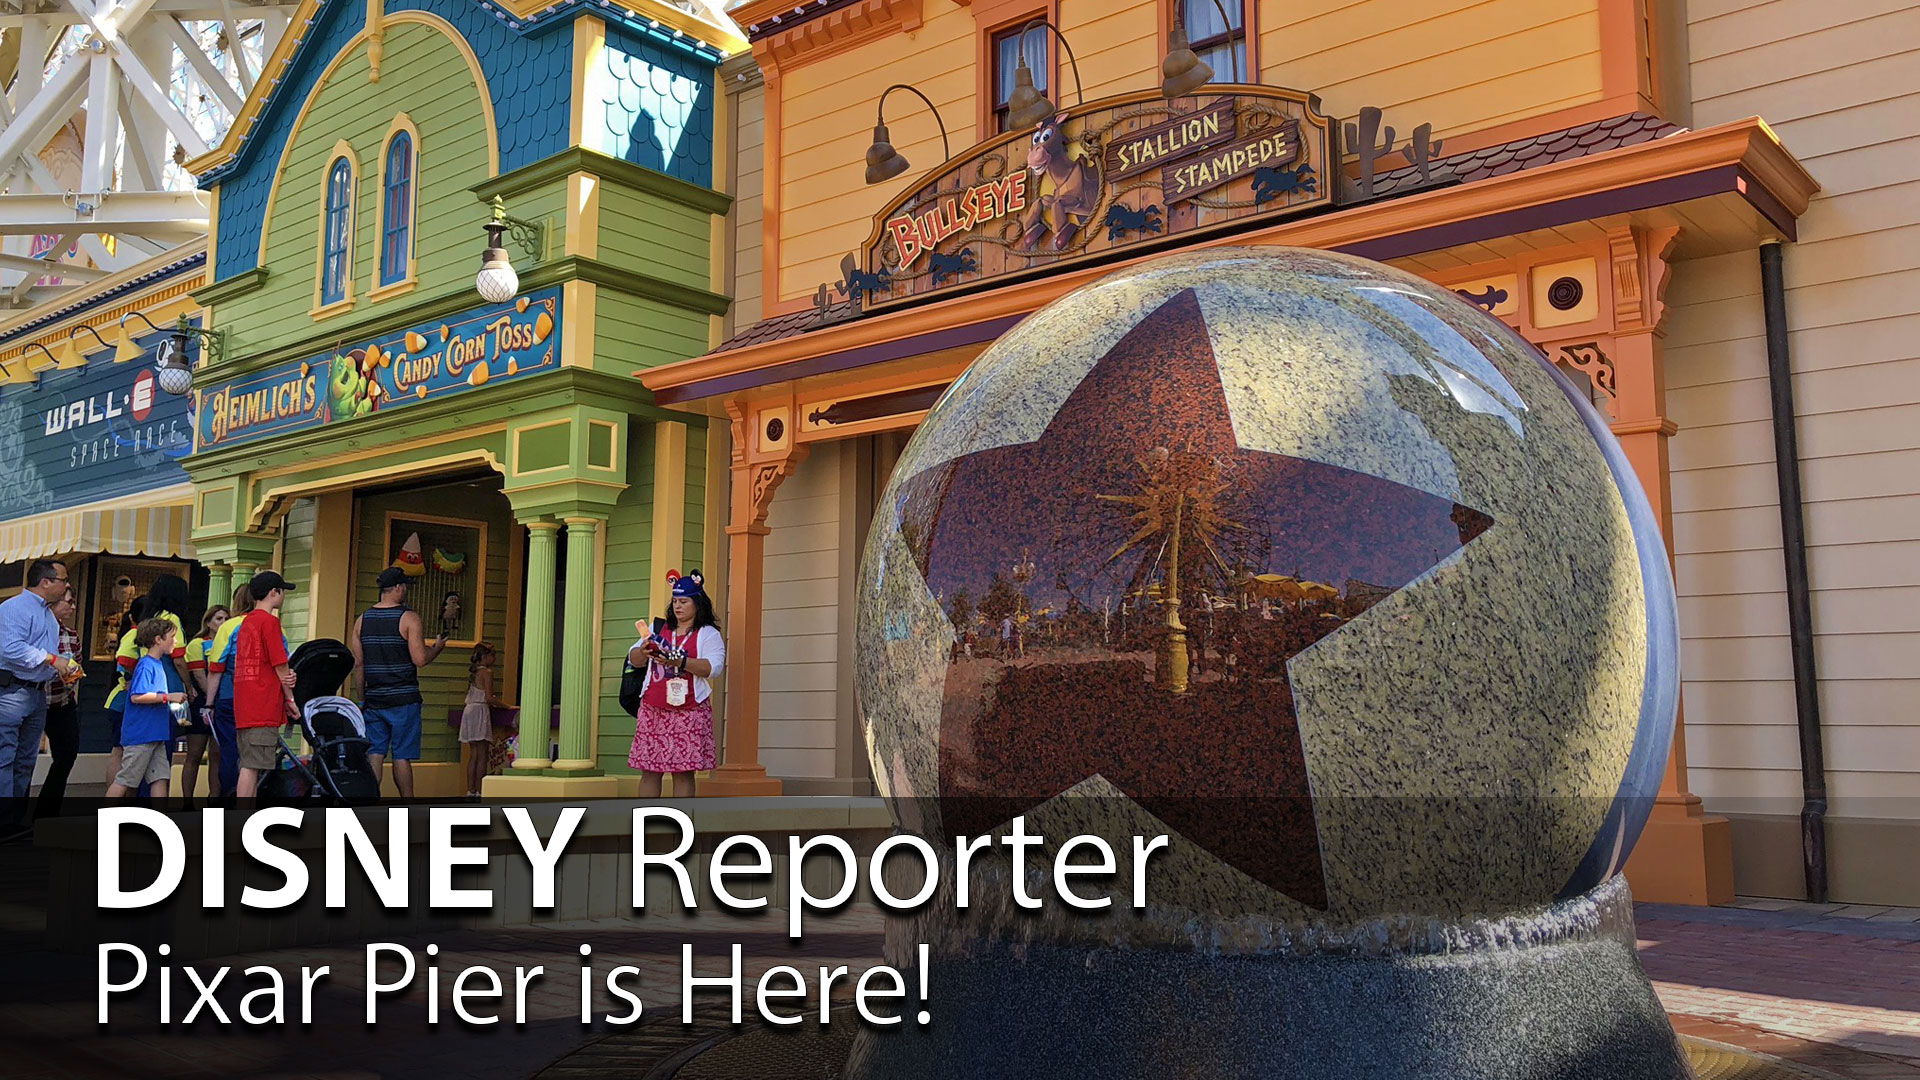 Pixar Pier is Here! – DISNEY Reporter